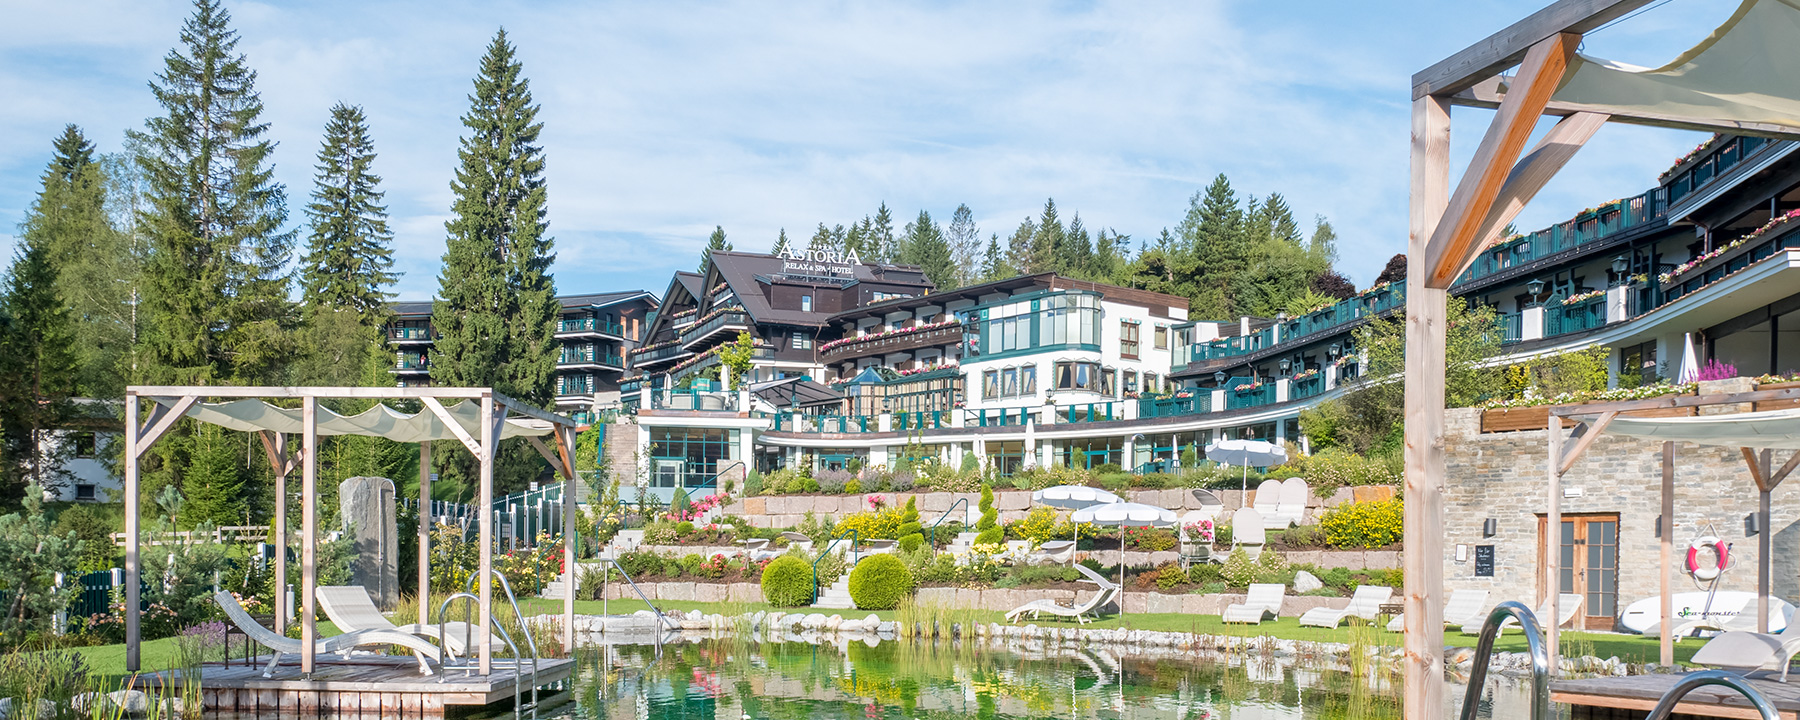 Naturbadesee Alpin Resort Sacher